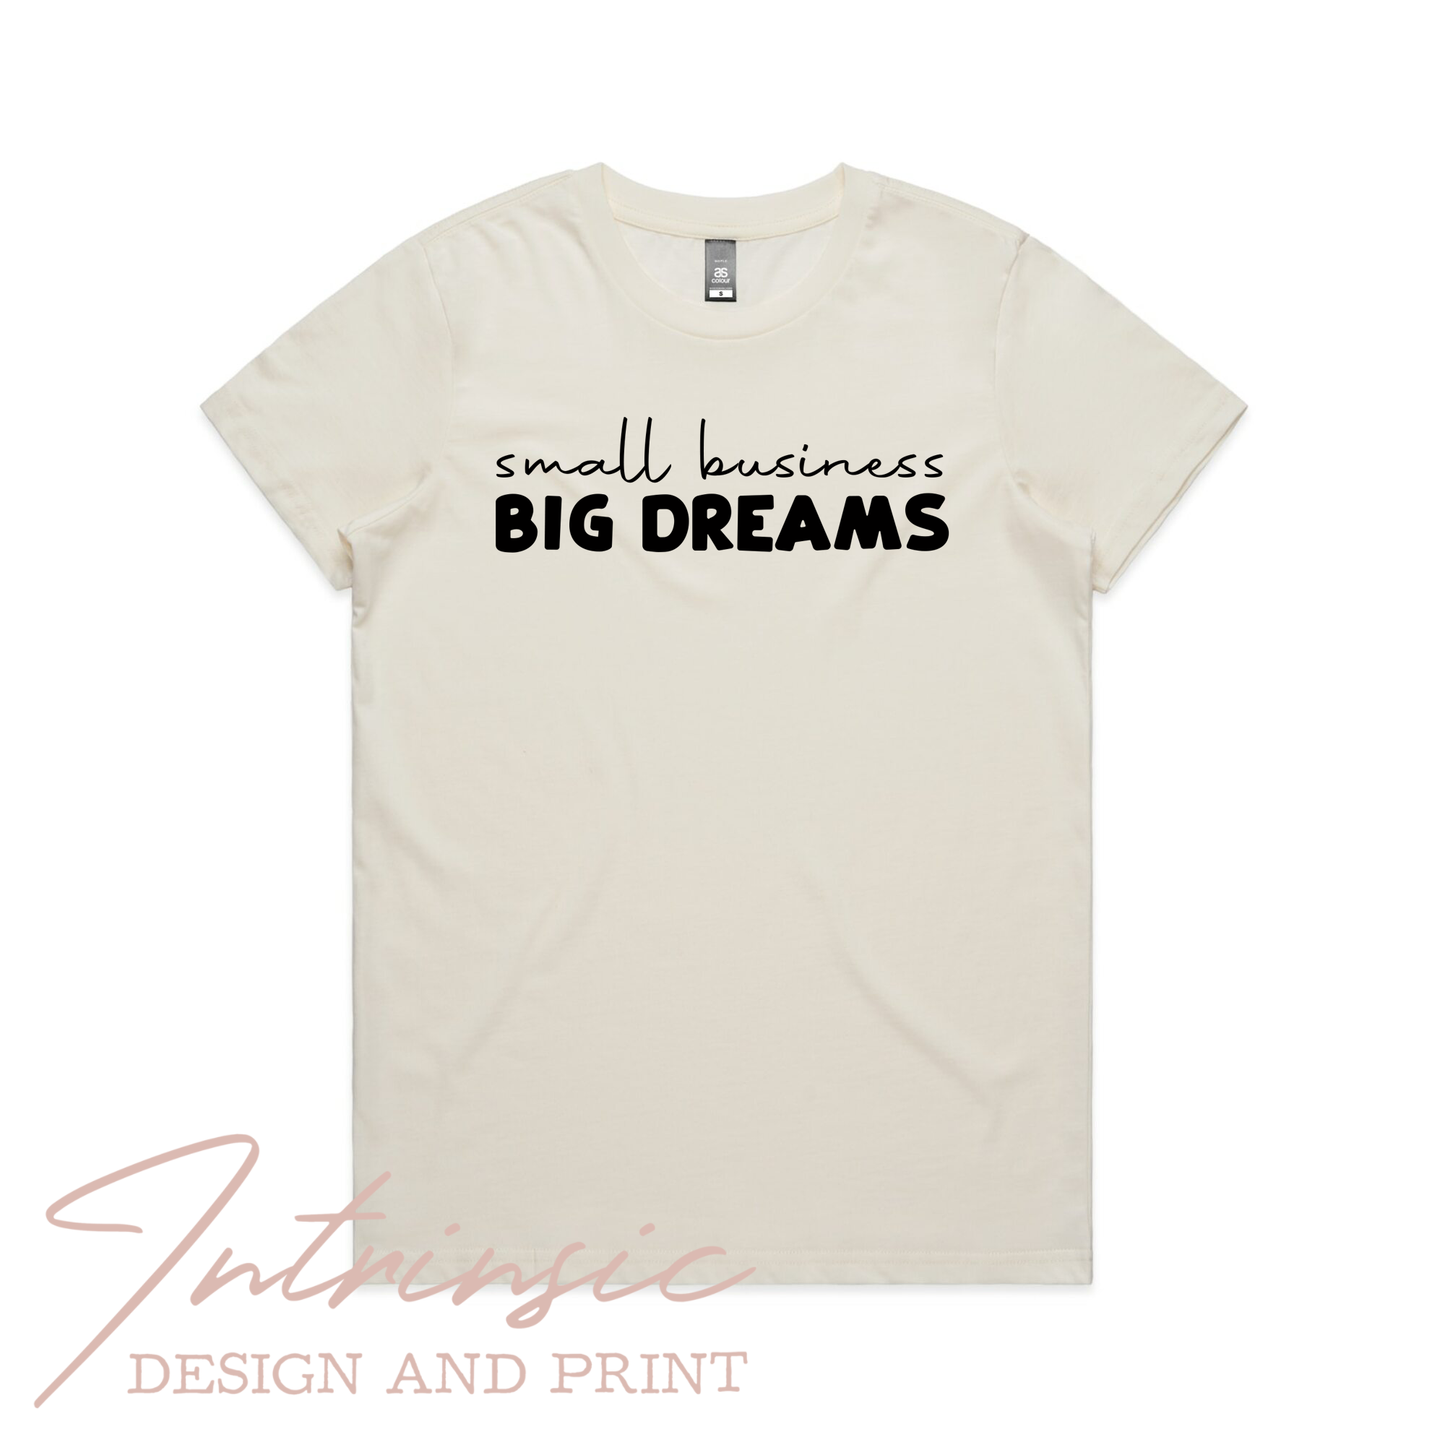 Big dreams block font